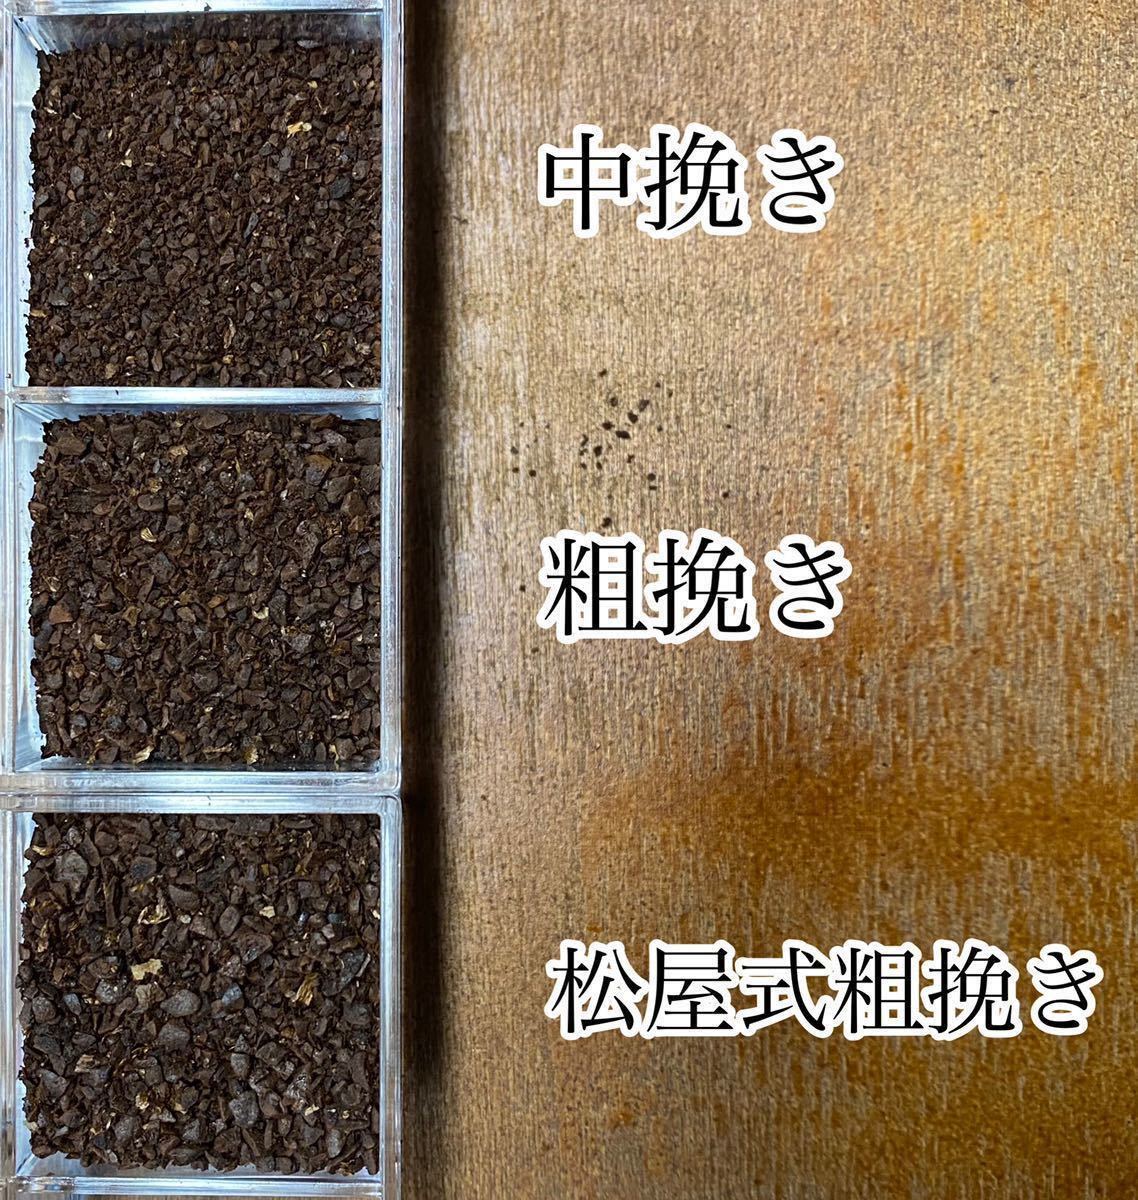 冬限定ブレンドセットB 自家焙煎コーヒー豆3種(100g×3個)